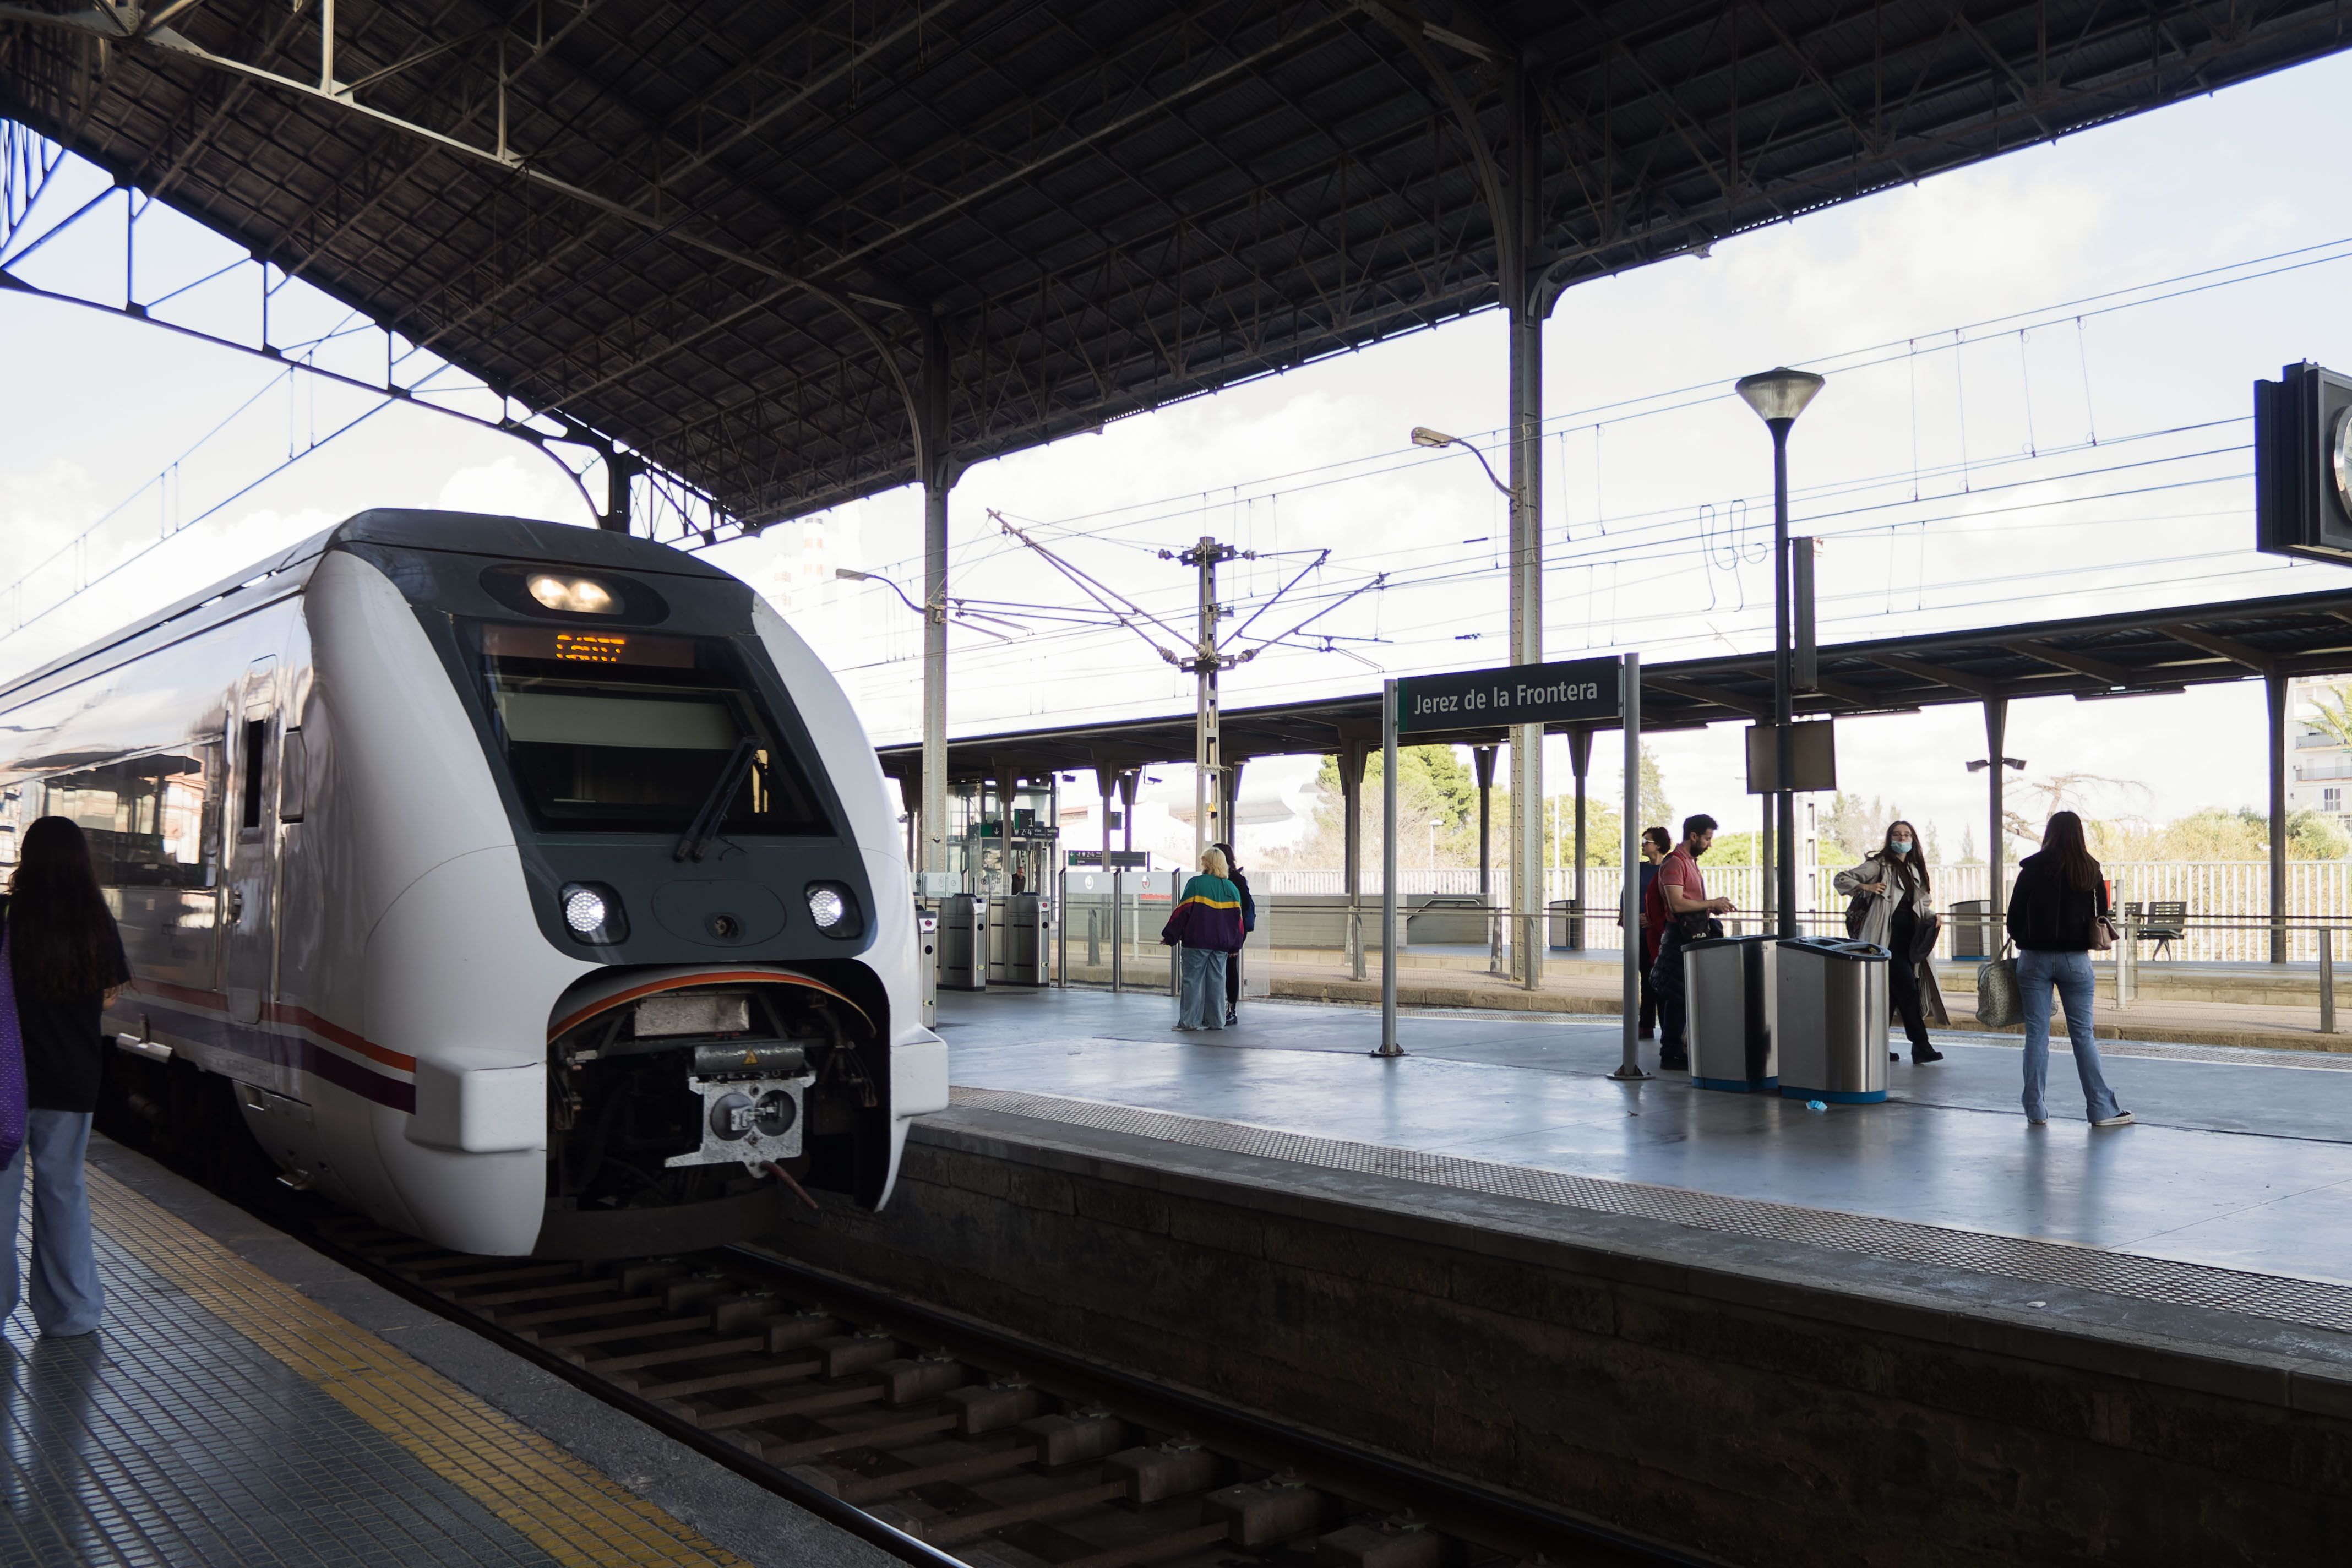 Imagen de un tren de Media Distancia en la estación de Jerez.